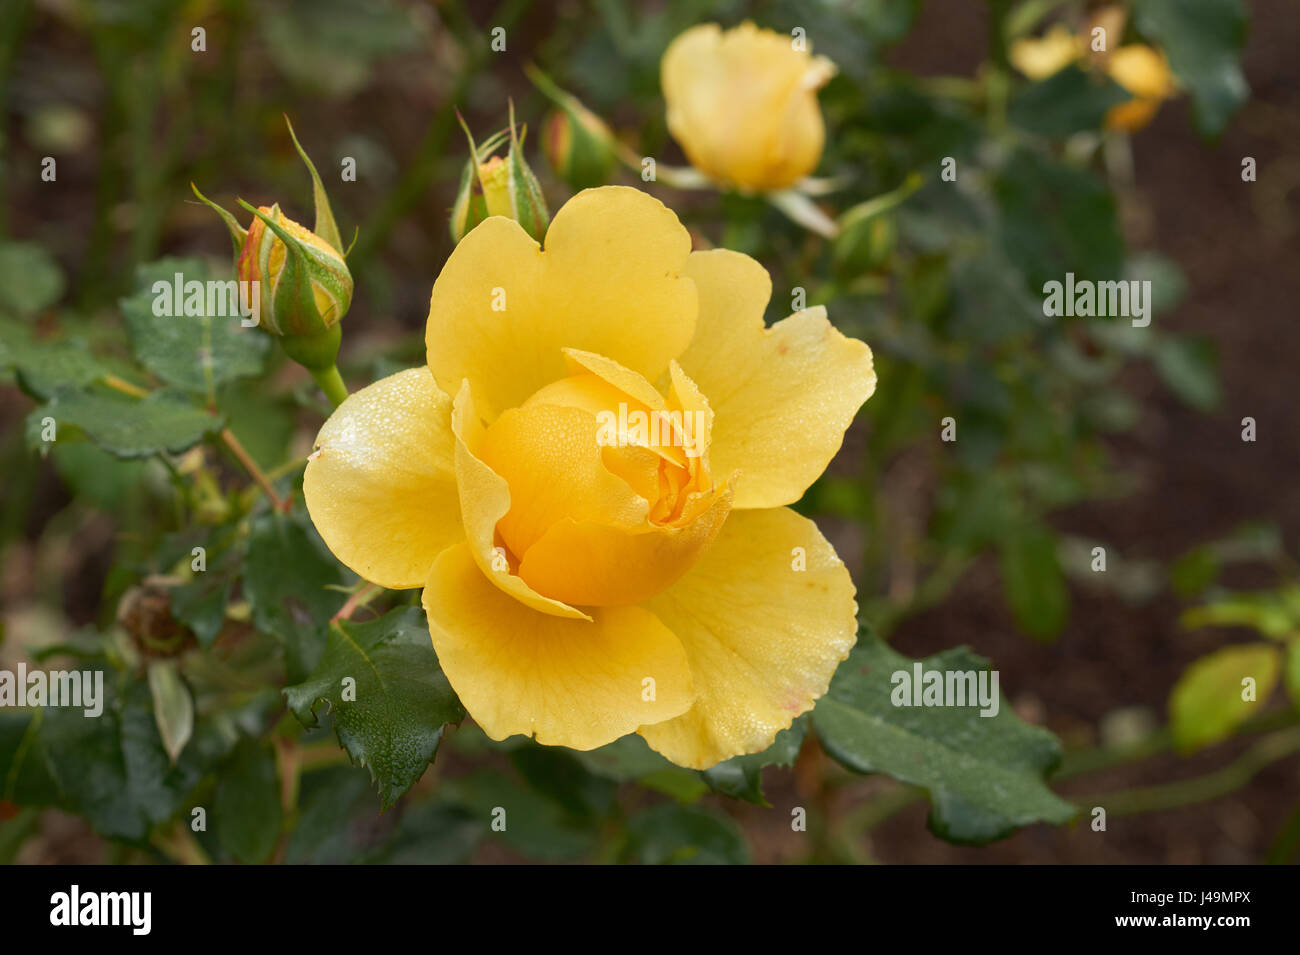 Image de belle rose jaune close up Banque D'Images